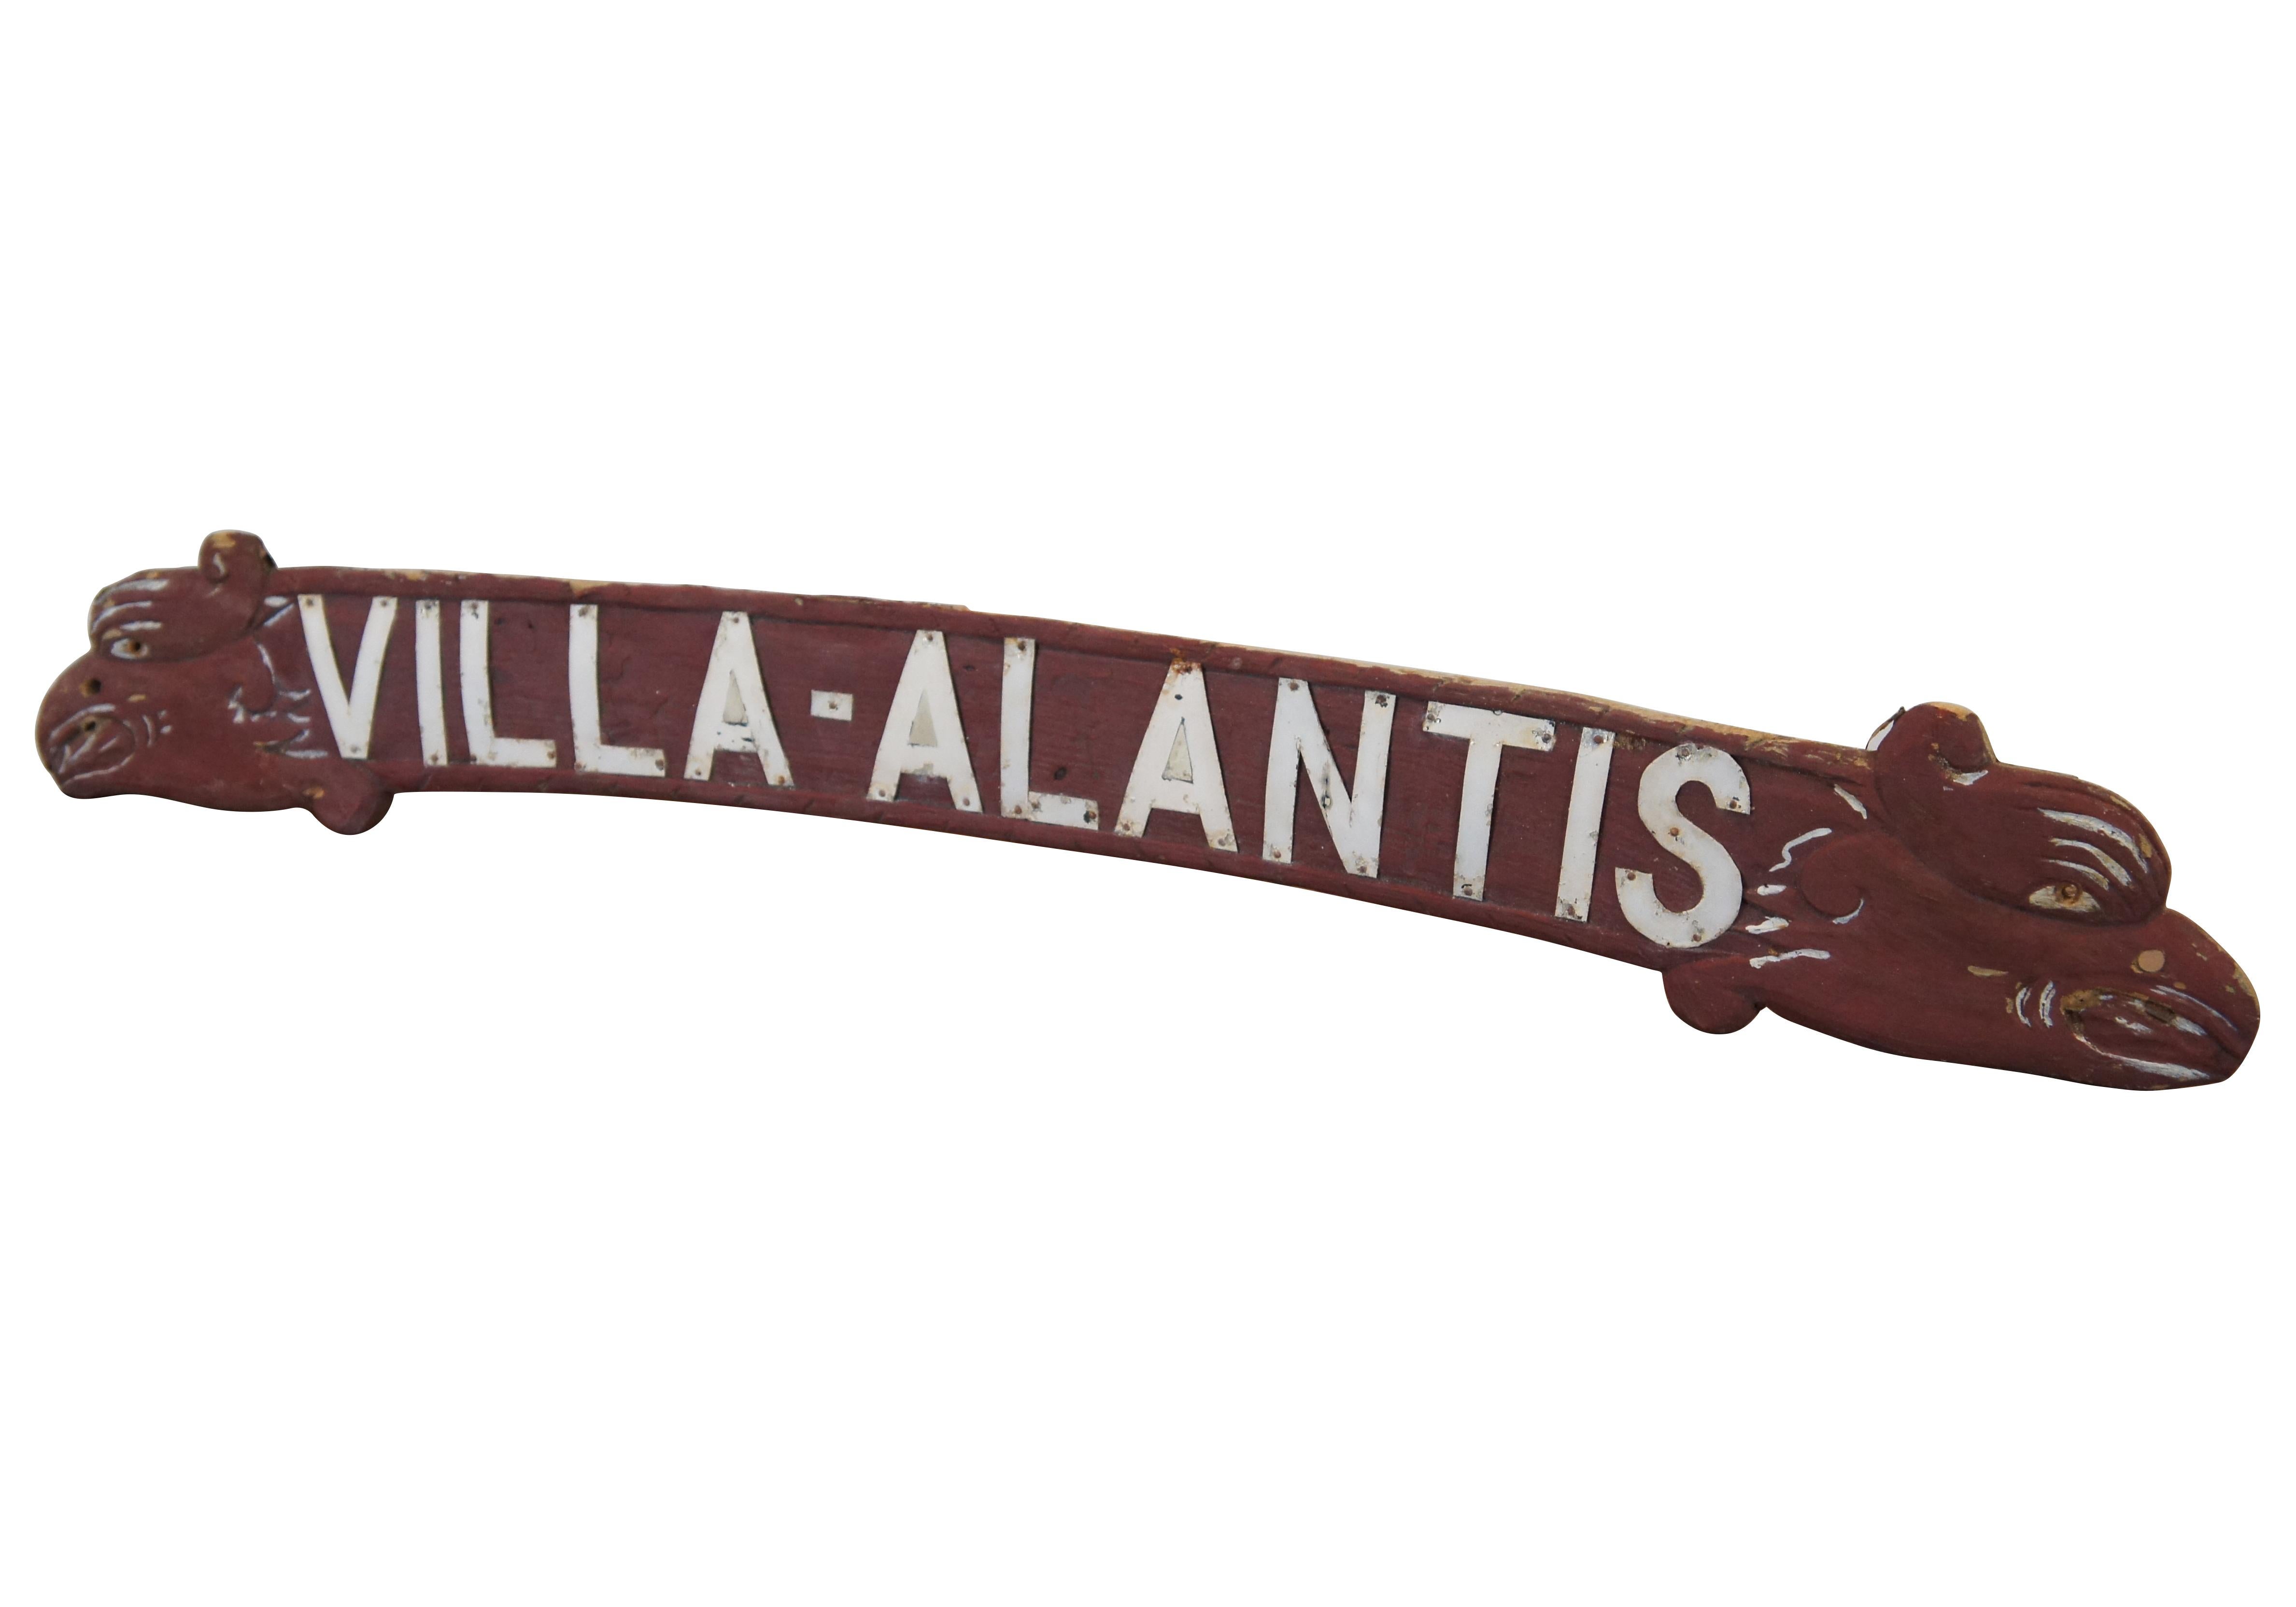 Vintage-Werbeschild aus geschnitztem Holz mit weißem Metallschriftzug für Villa-Atlantis, mit einer leicht geschwungenen Form, die mit den Köpfen von Drachen, Seeschlangen oder Adlern/Gryphen bestückt ist.